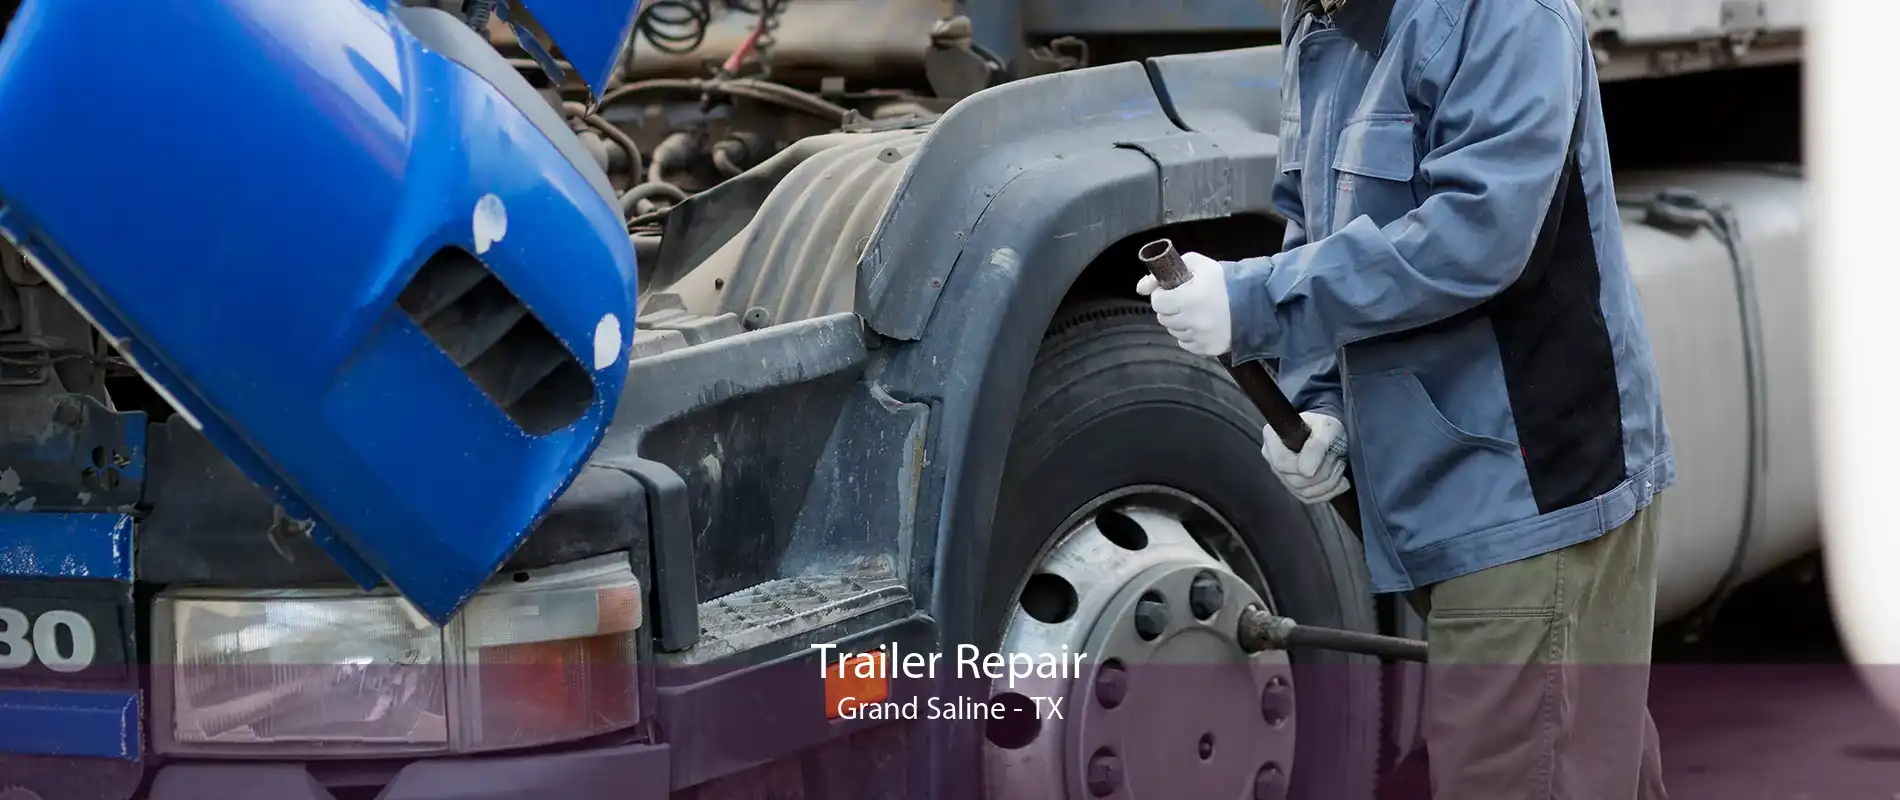 Trailer Repair Grand Saline - TX